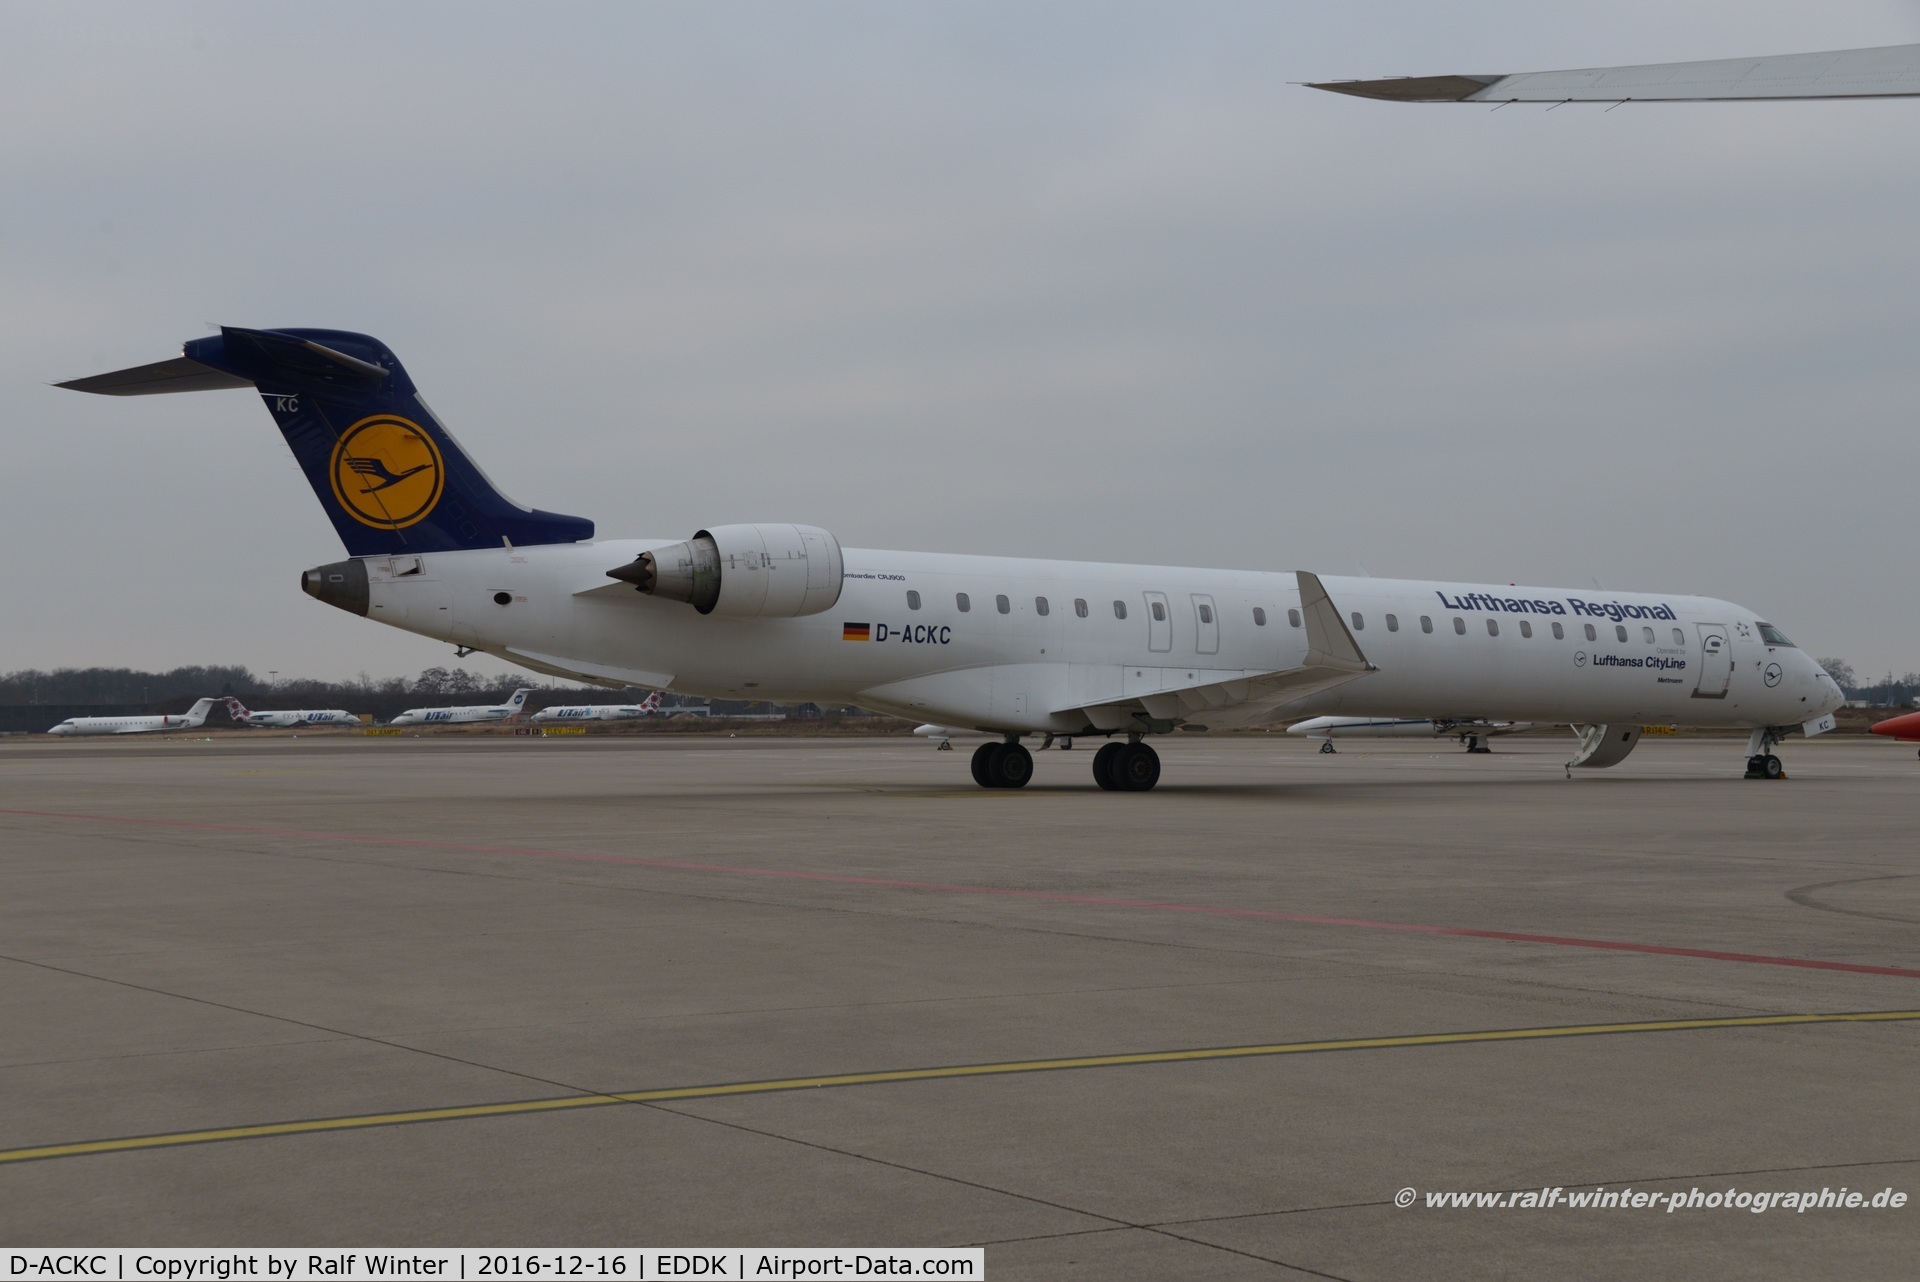 D-ACKC, 2006 Bombardier CRJ-900LR (CL-600-2D24) C/N 15078, Bombardier CL-600-2D24 CRJ-900 - CL CLH Lufthansa CityLine LH Regional 'Mettmann' - 15078 - D-ACKC - 16.12.2016 - CGN